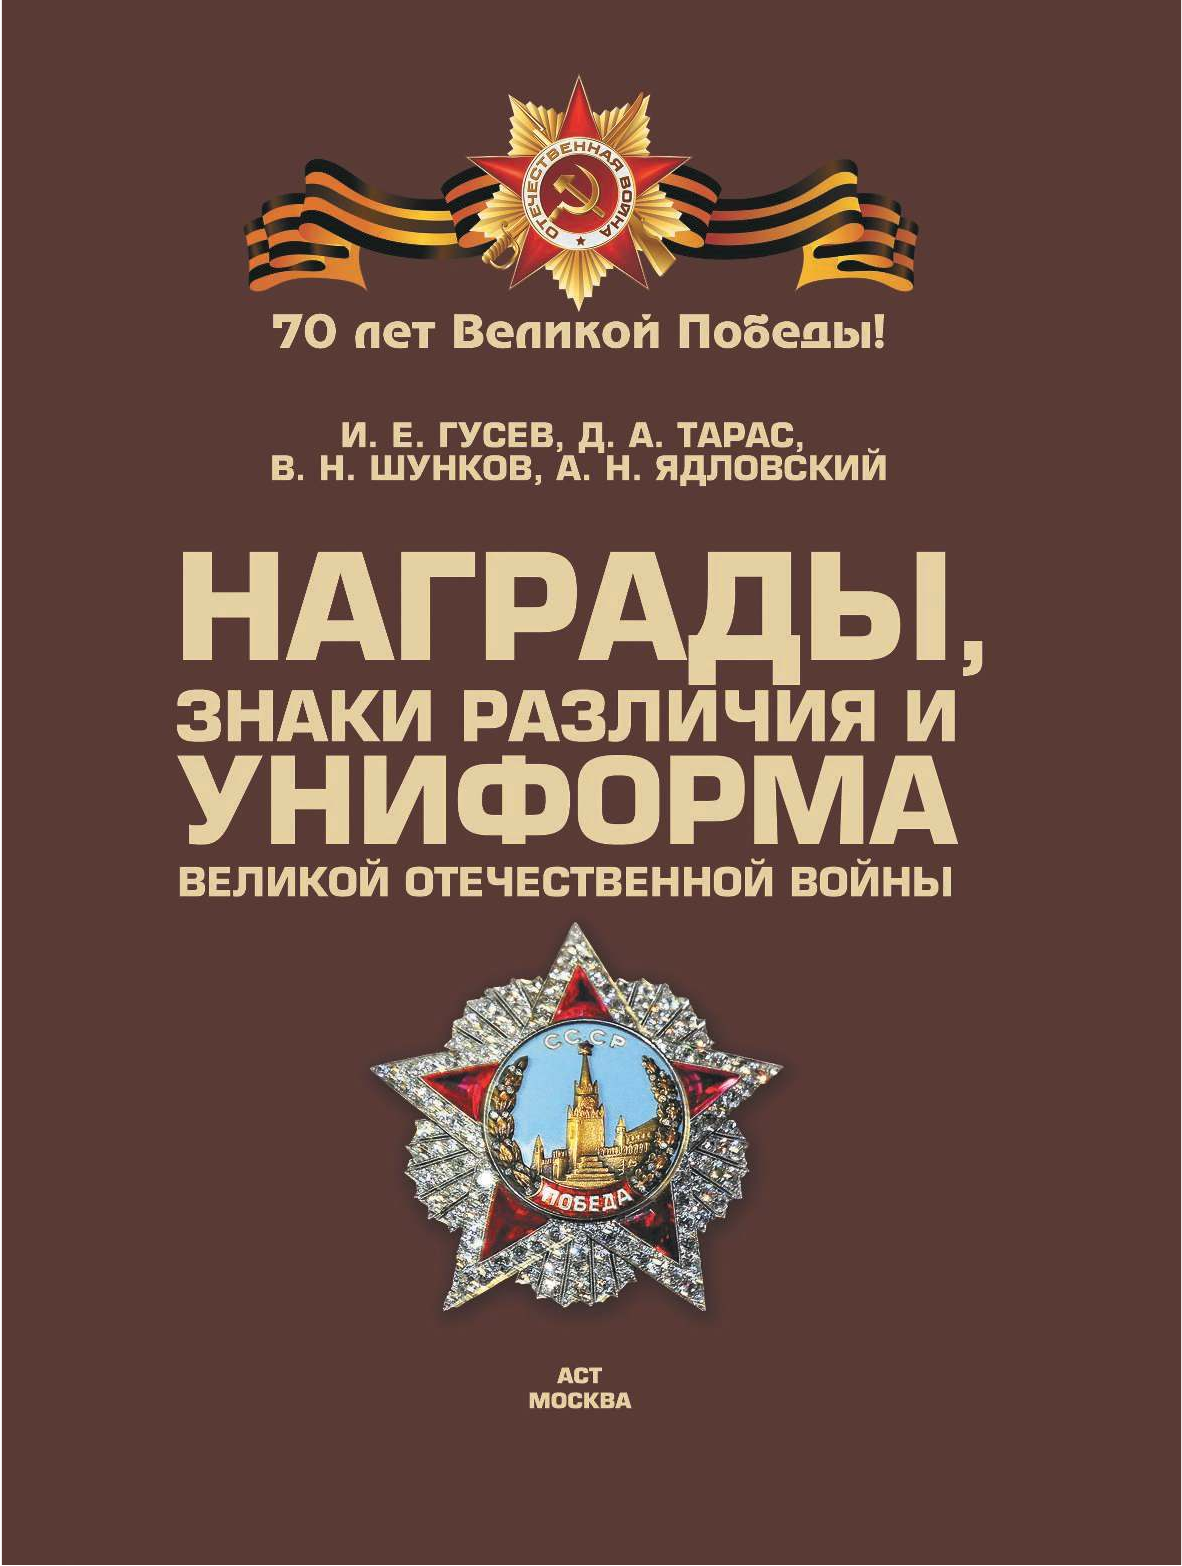  Награды, знаки различия и униформа Великой Отечественной войны - страница 1